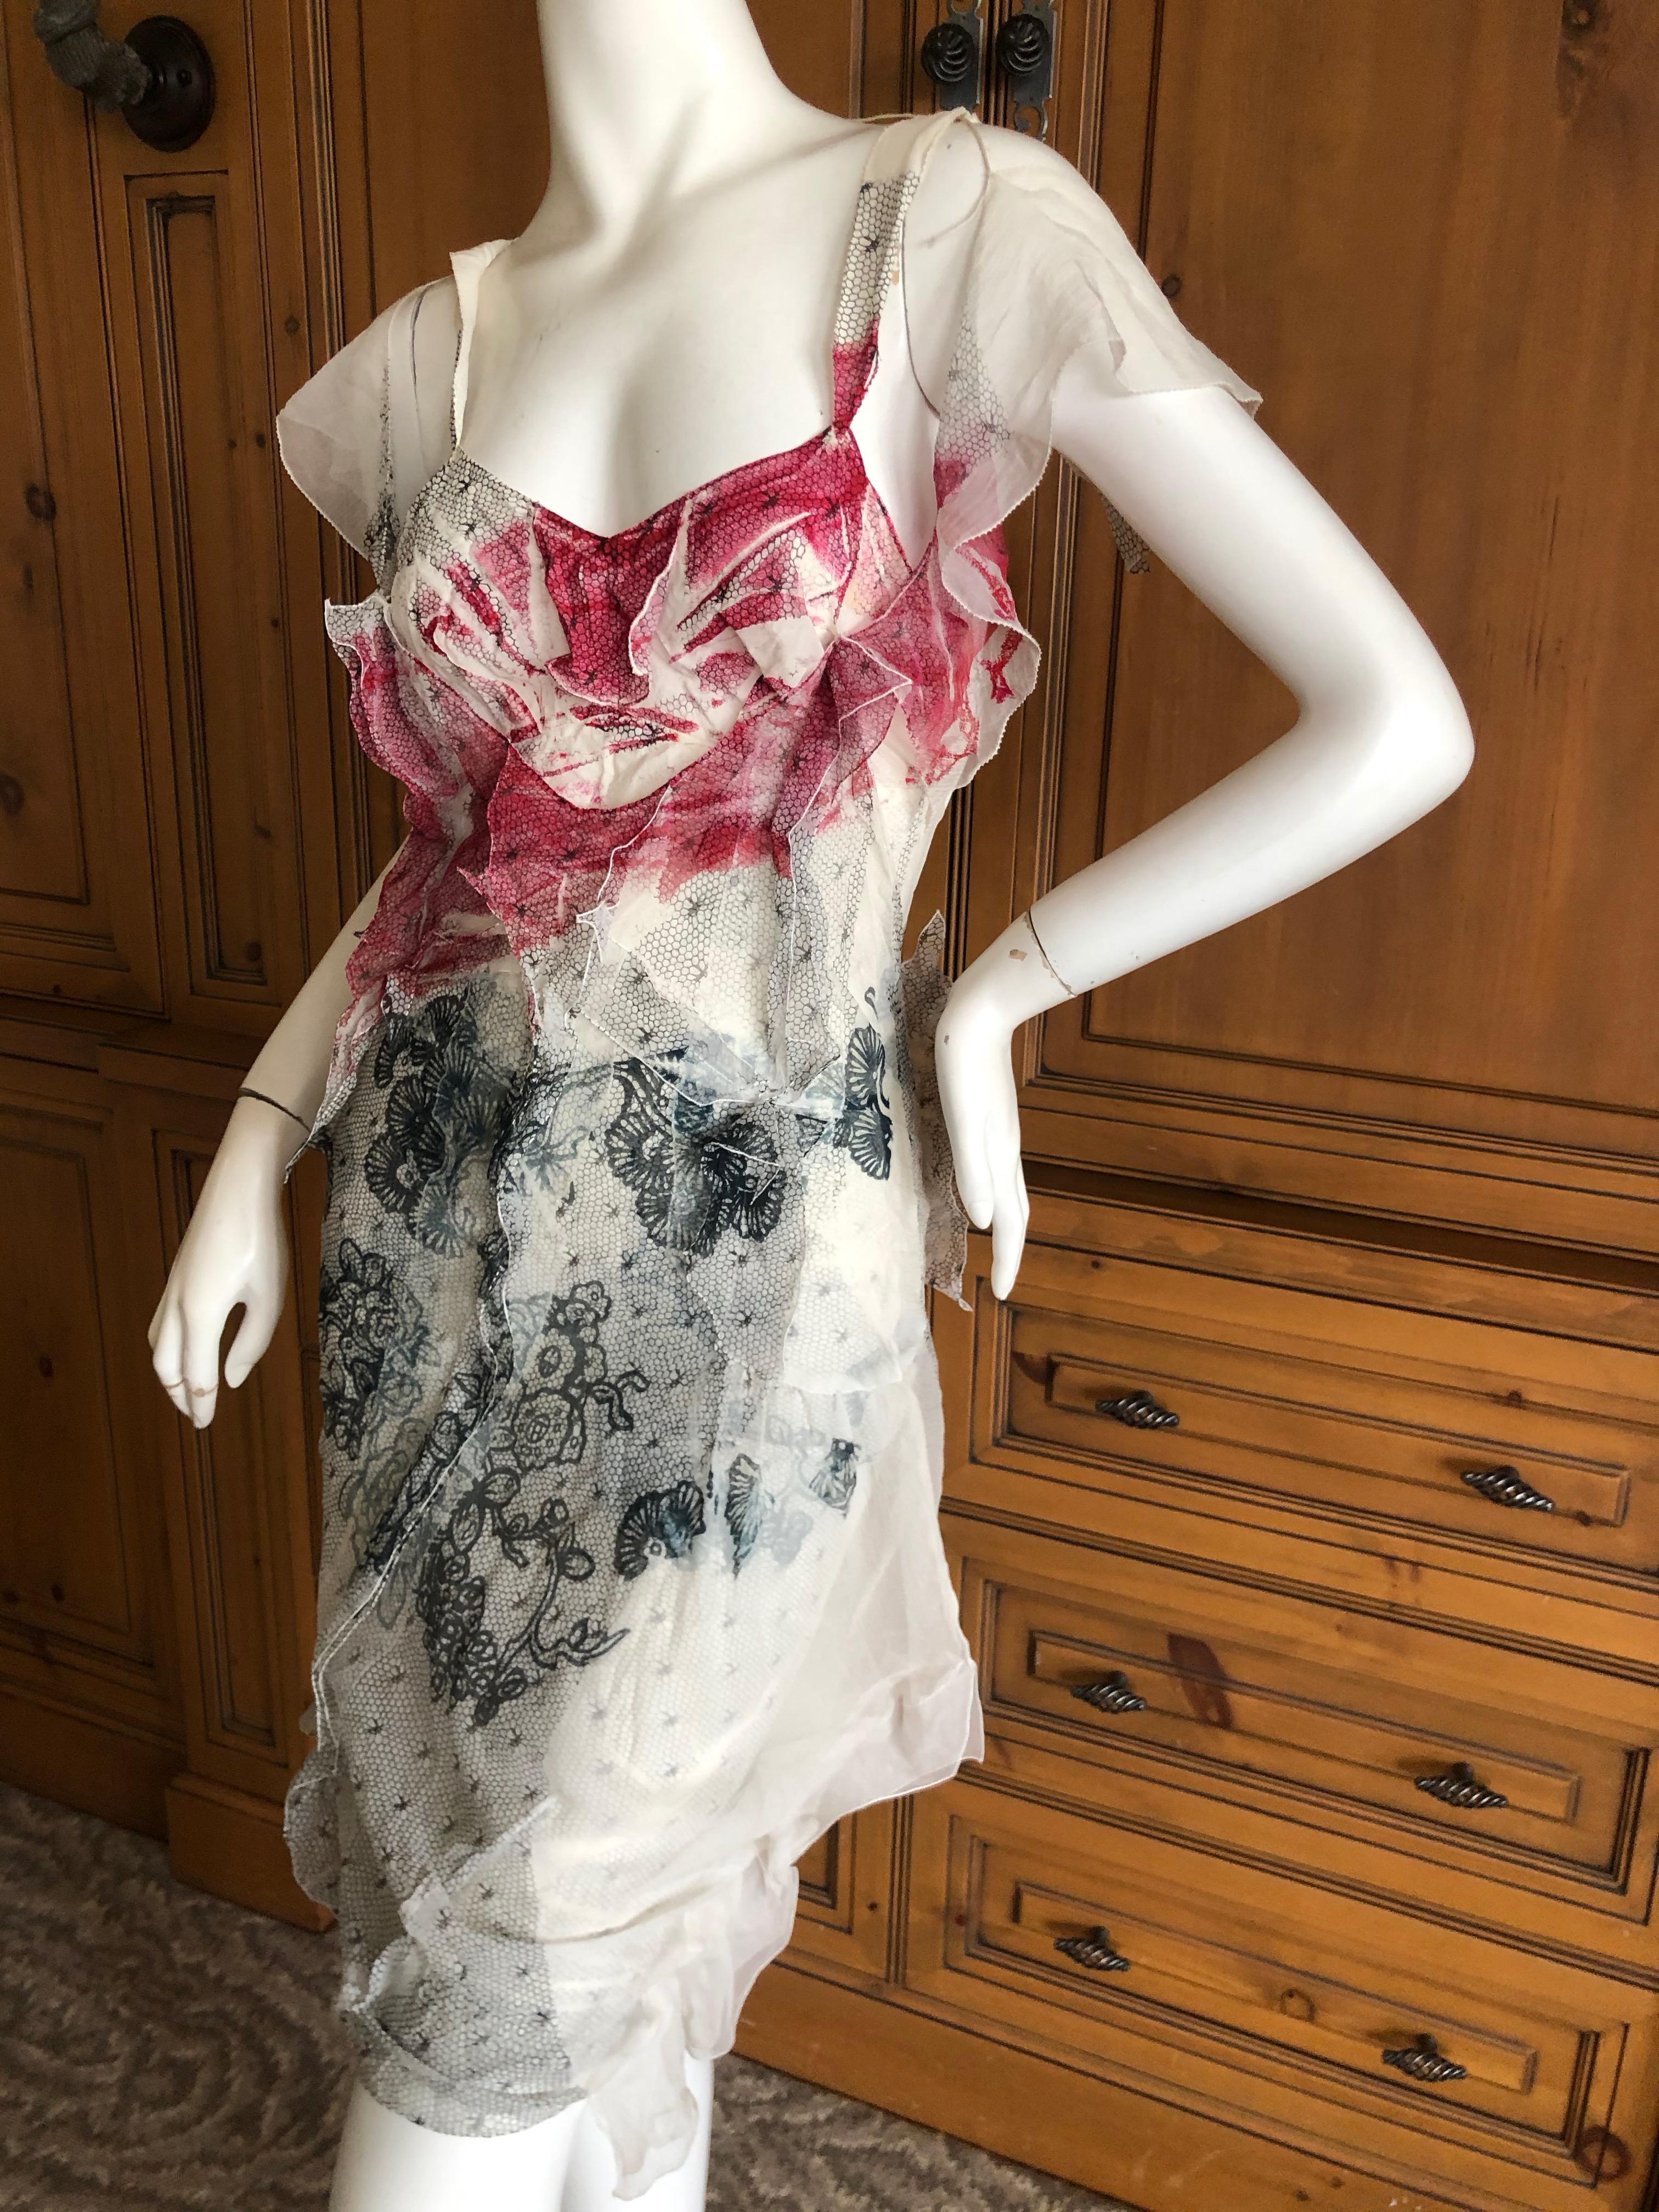 bloodstained silk dress